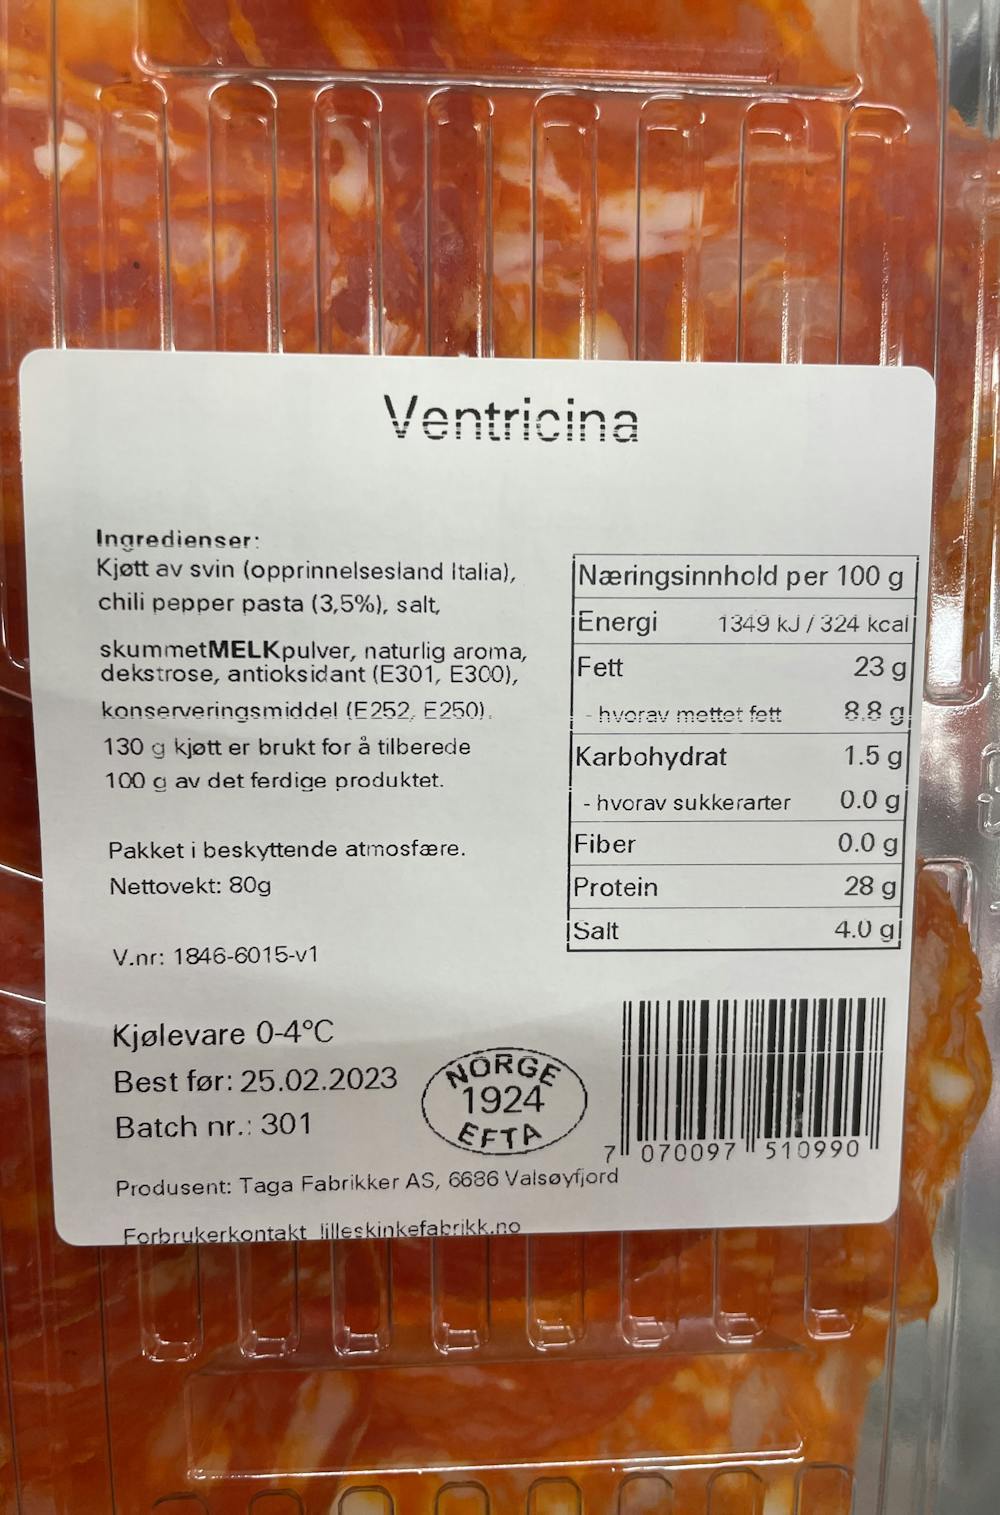 Ingredienslisten til Spicy salami ventricina, Lille skinke fabrikk